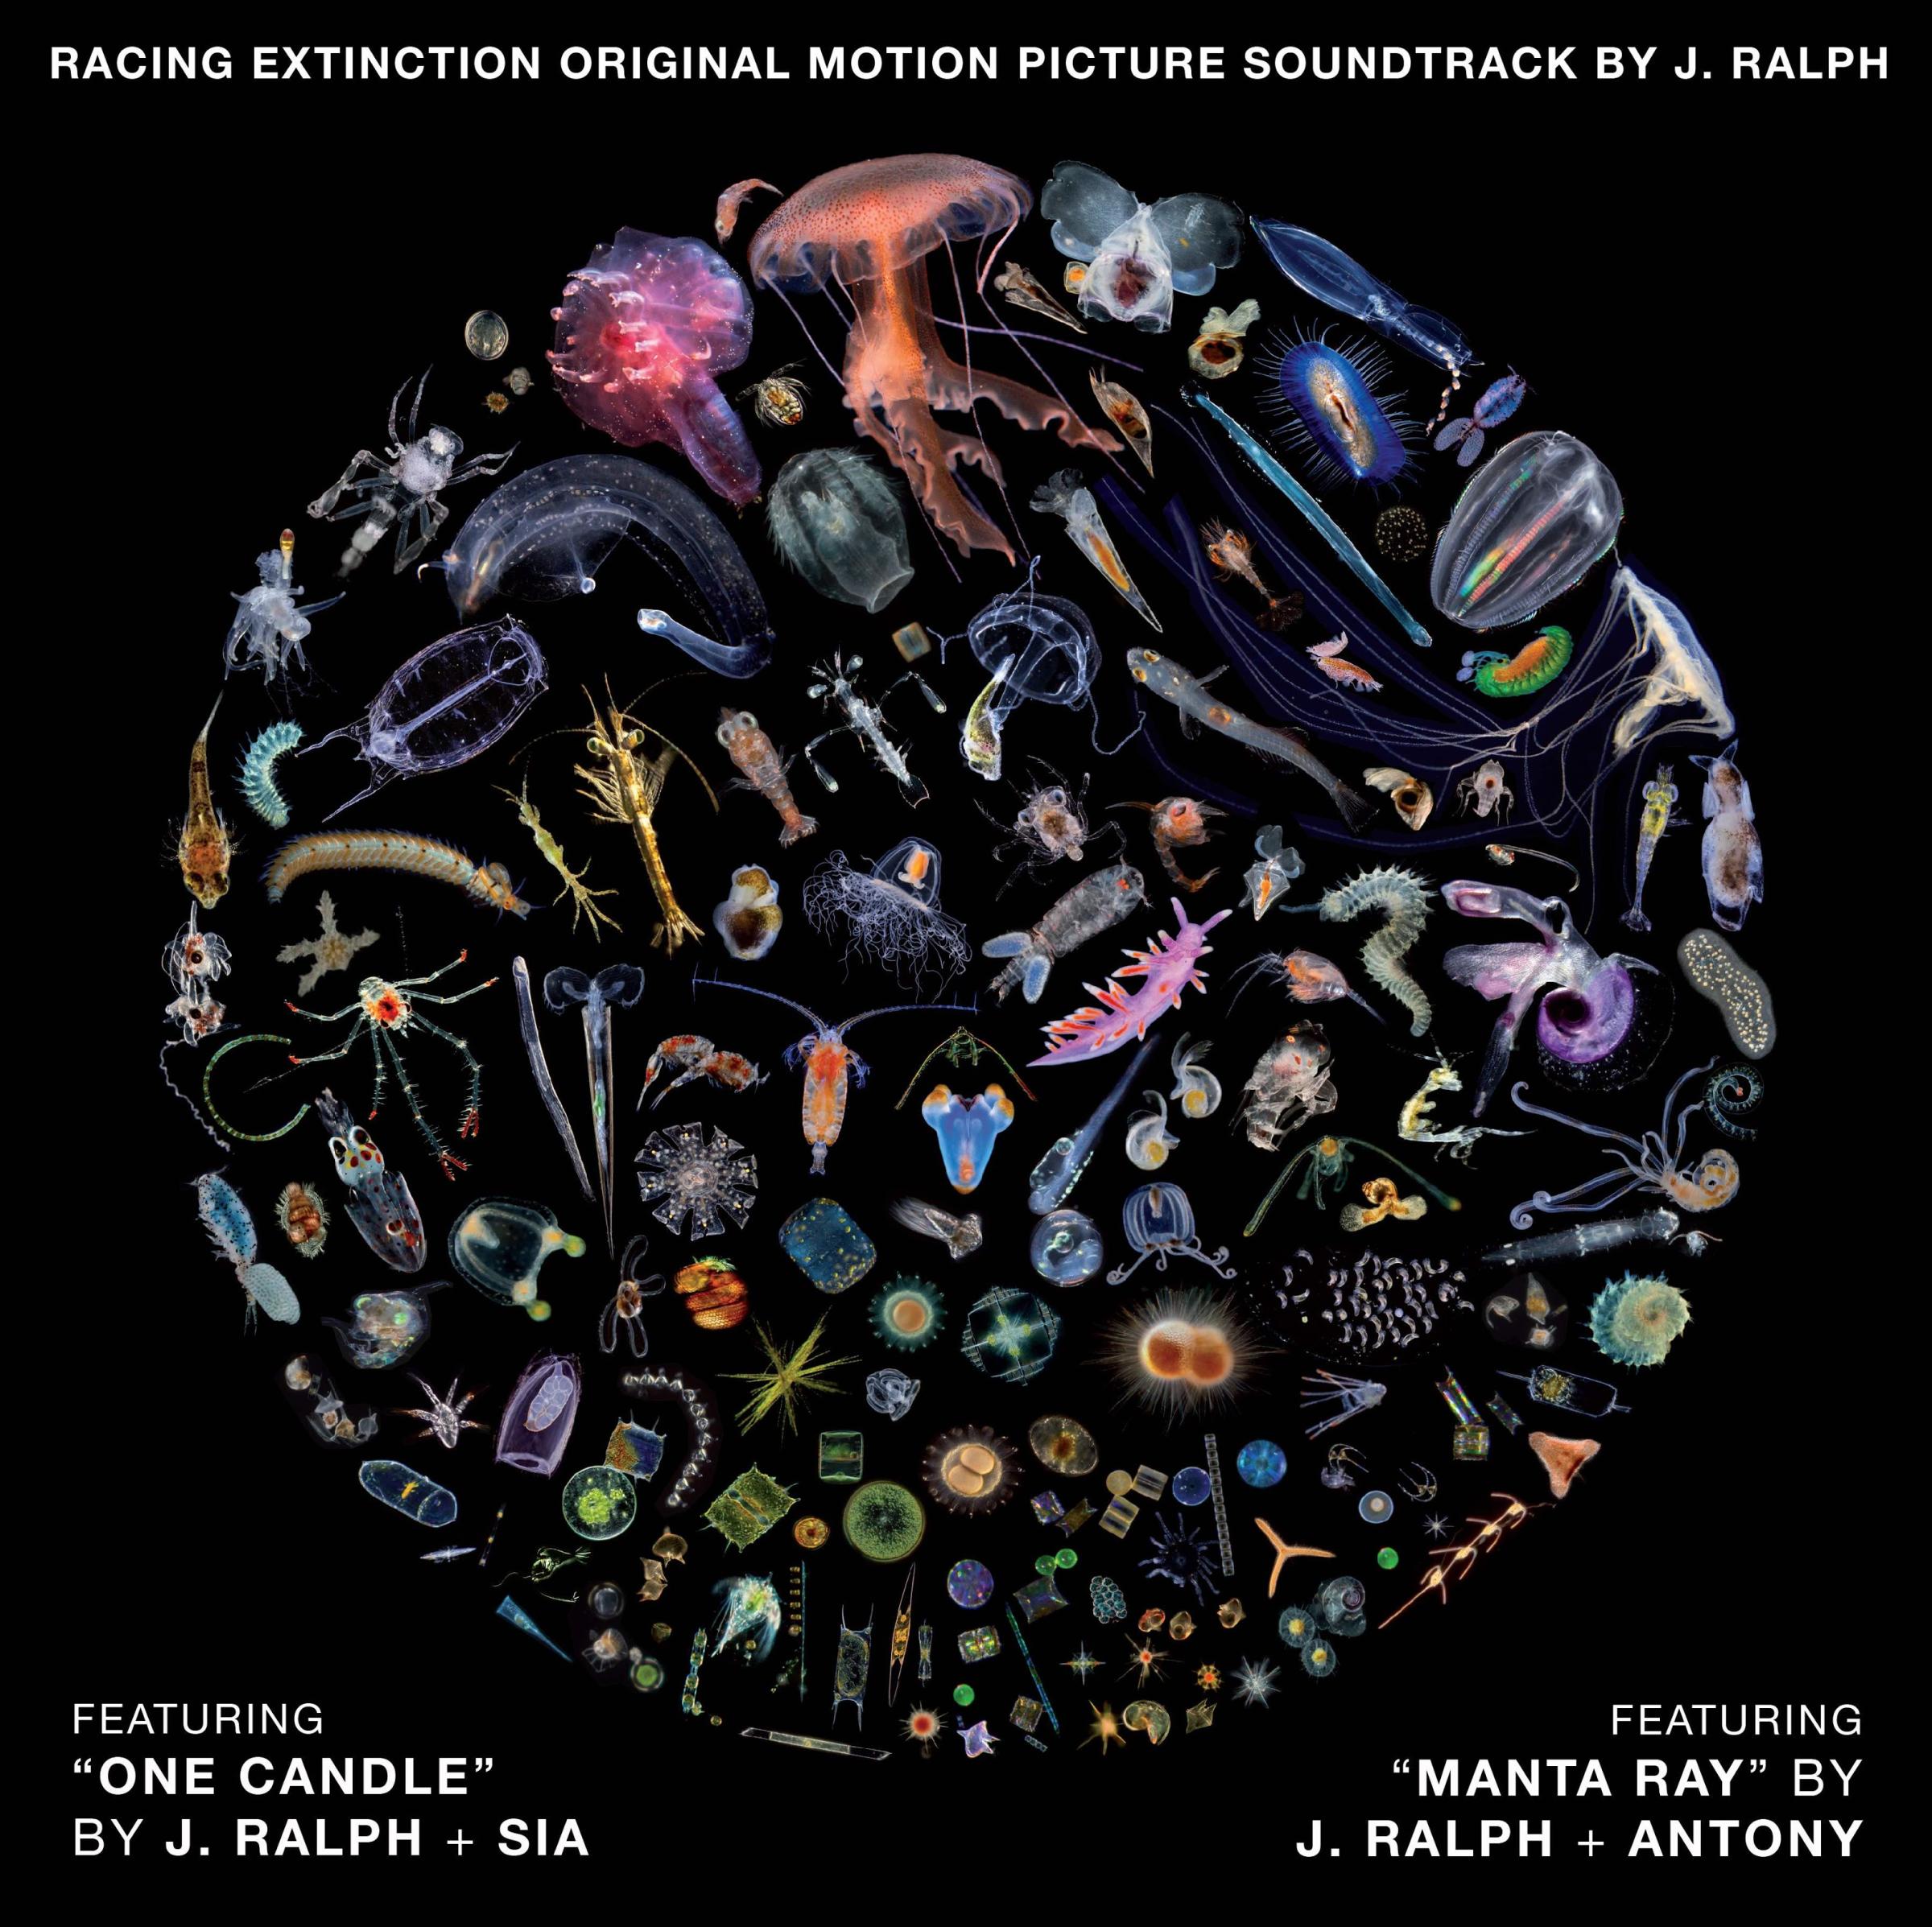 "Manta Ray" by J. Ralph + Antony.